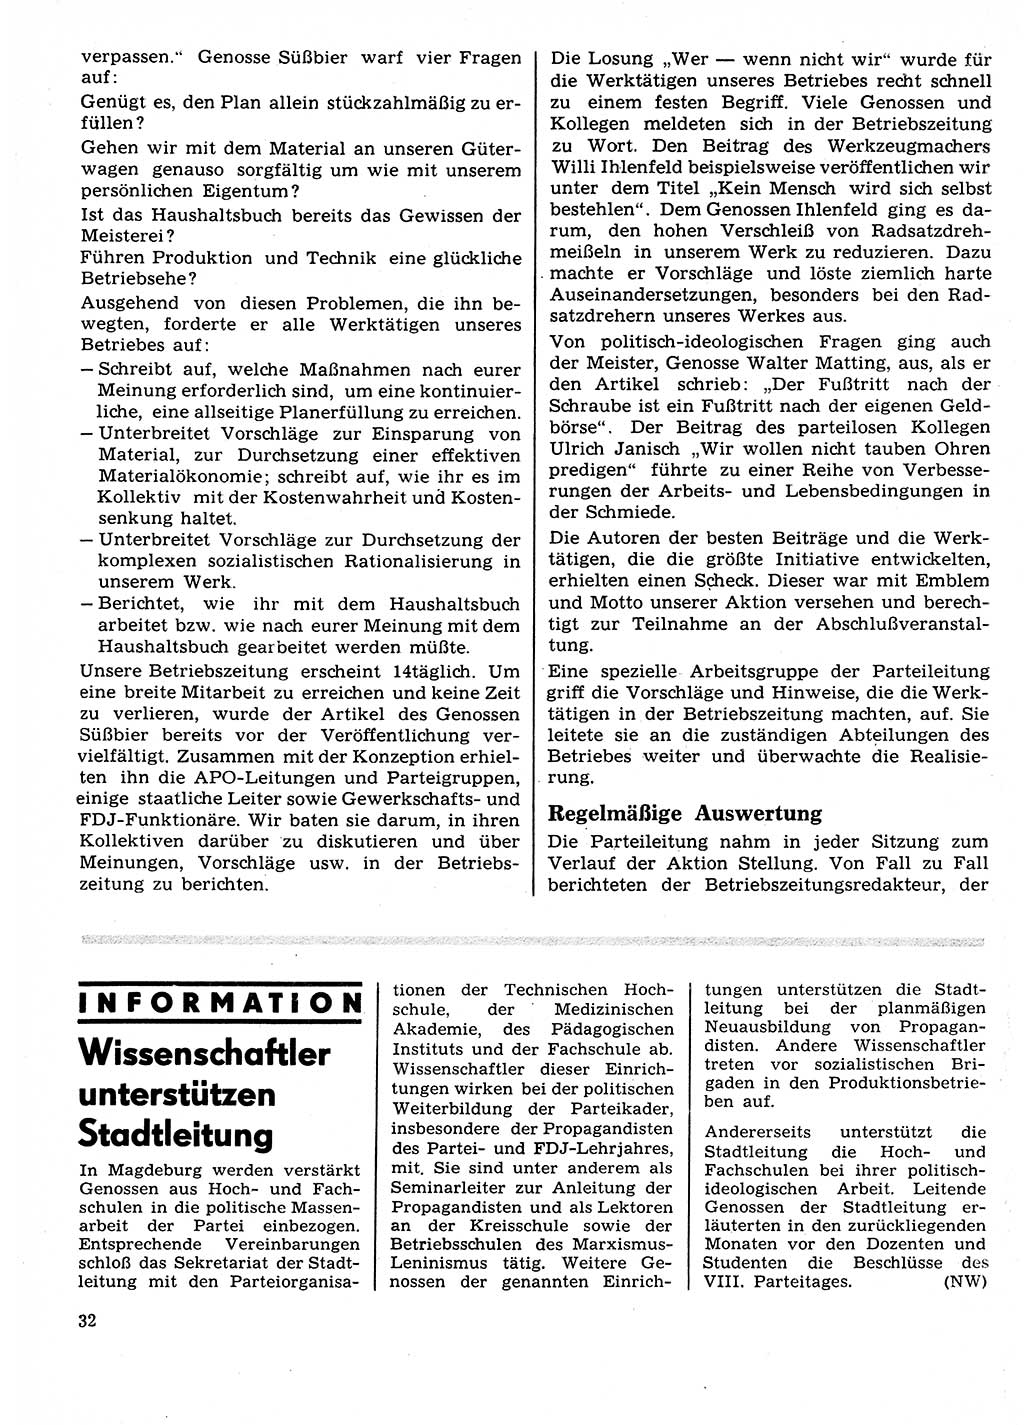 Neuer Weg (NW), Organ des Zentralkomitees (ZK) der SED (Sozialistische Einheitspartei Deutschlands) für Fragen des Parteilebens, 27. Jahrgang [Deutsche Demokratische Republik (DDR)] 1972, Seite 32 (NW ZK SED DDR 1972, S. 32)